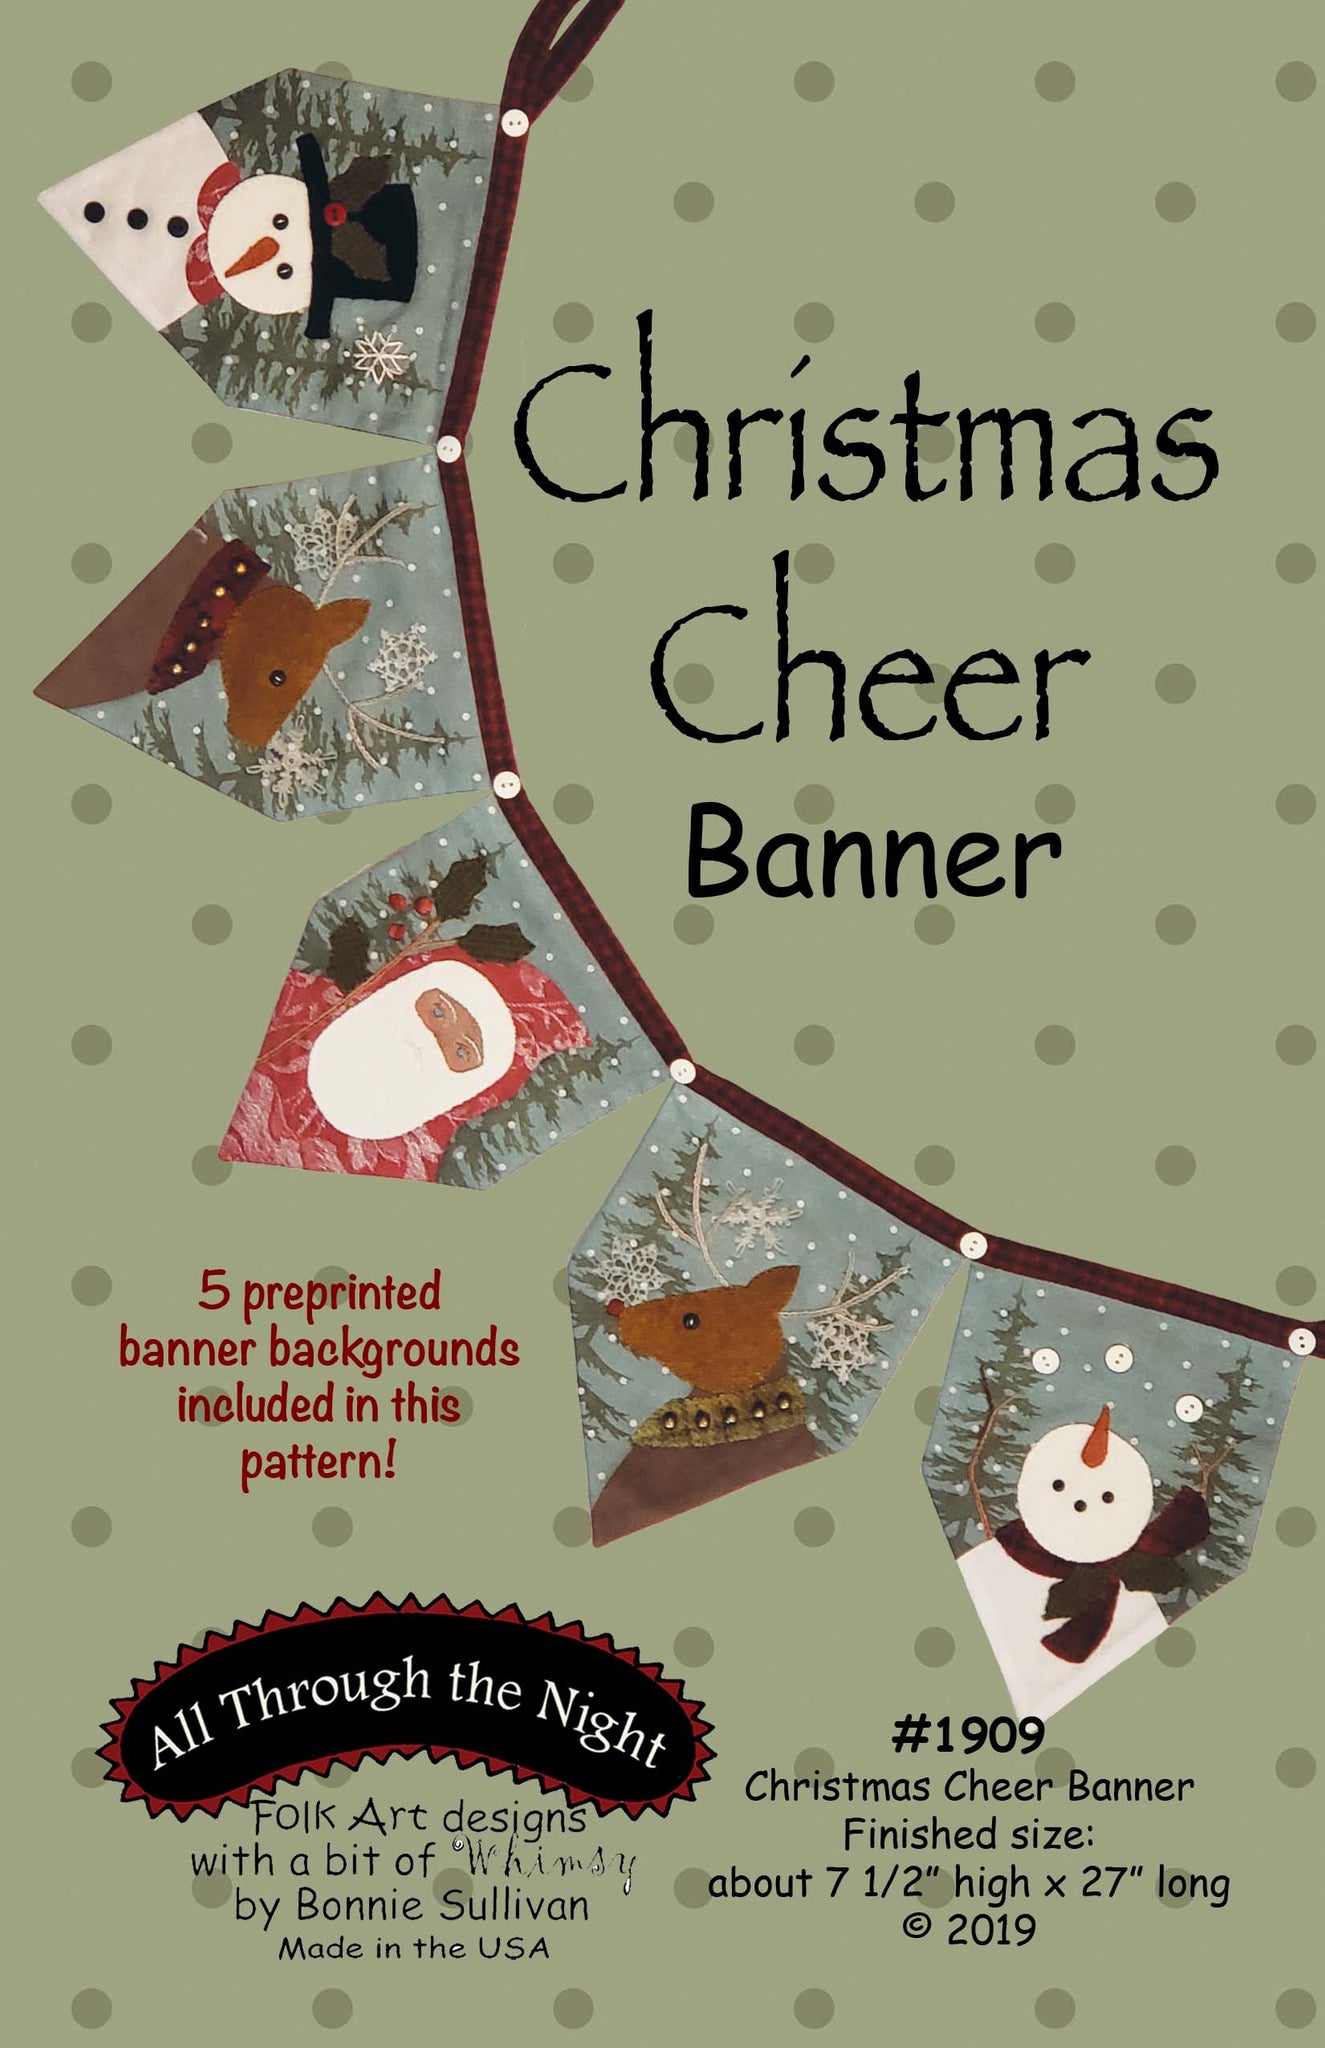 1909 - Christmas Cheer Banner